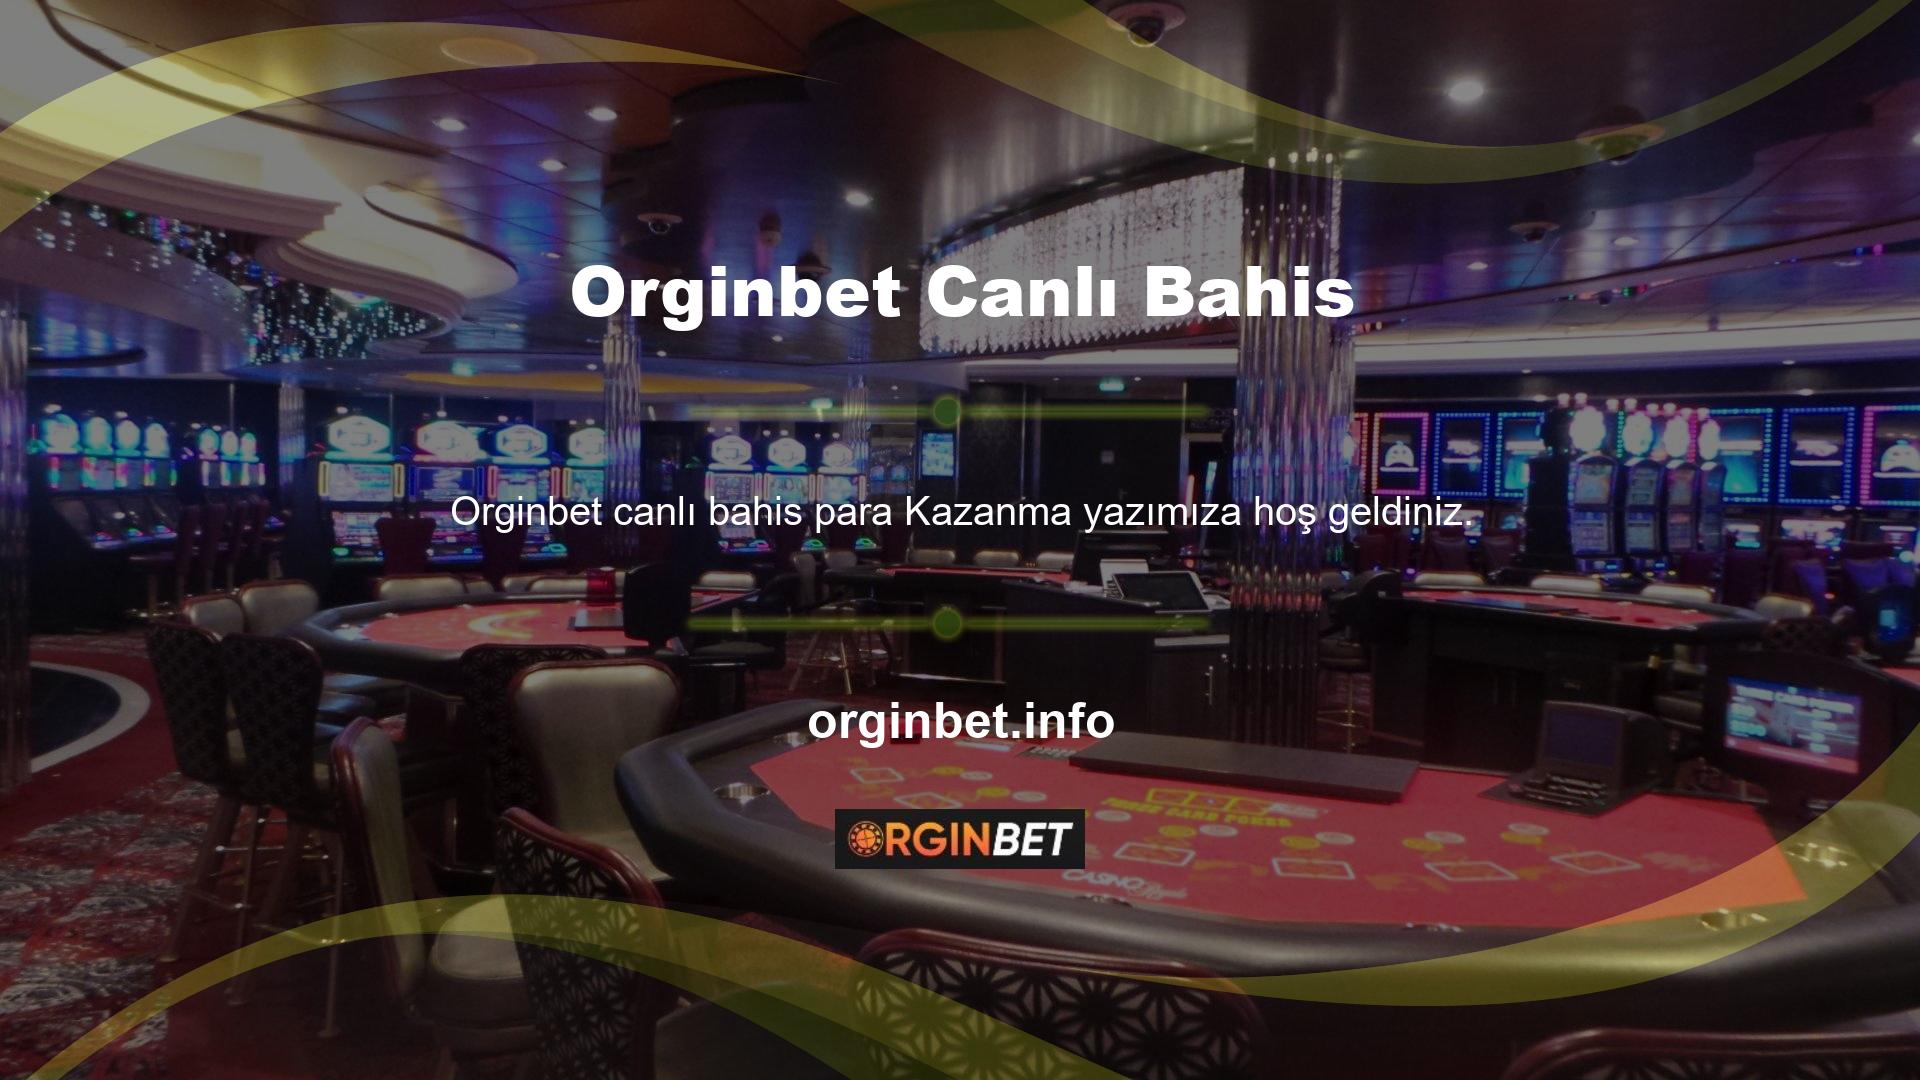 Orginbet, kullanıcıların spor bahislerinden para kazanmalarını sağlayan yeni bir canlı bahis platformudur